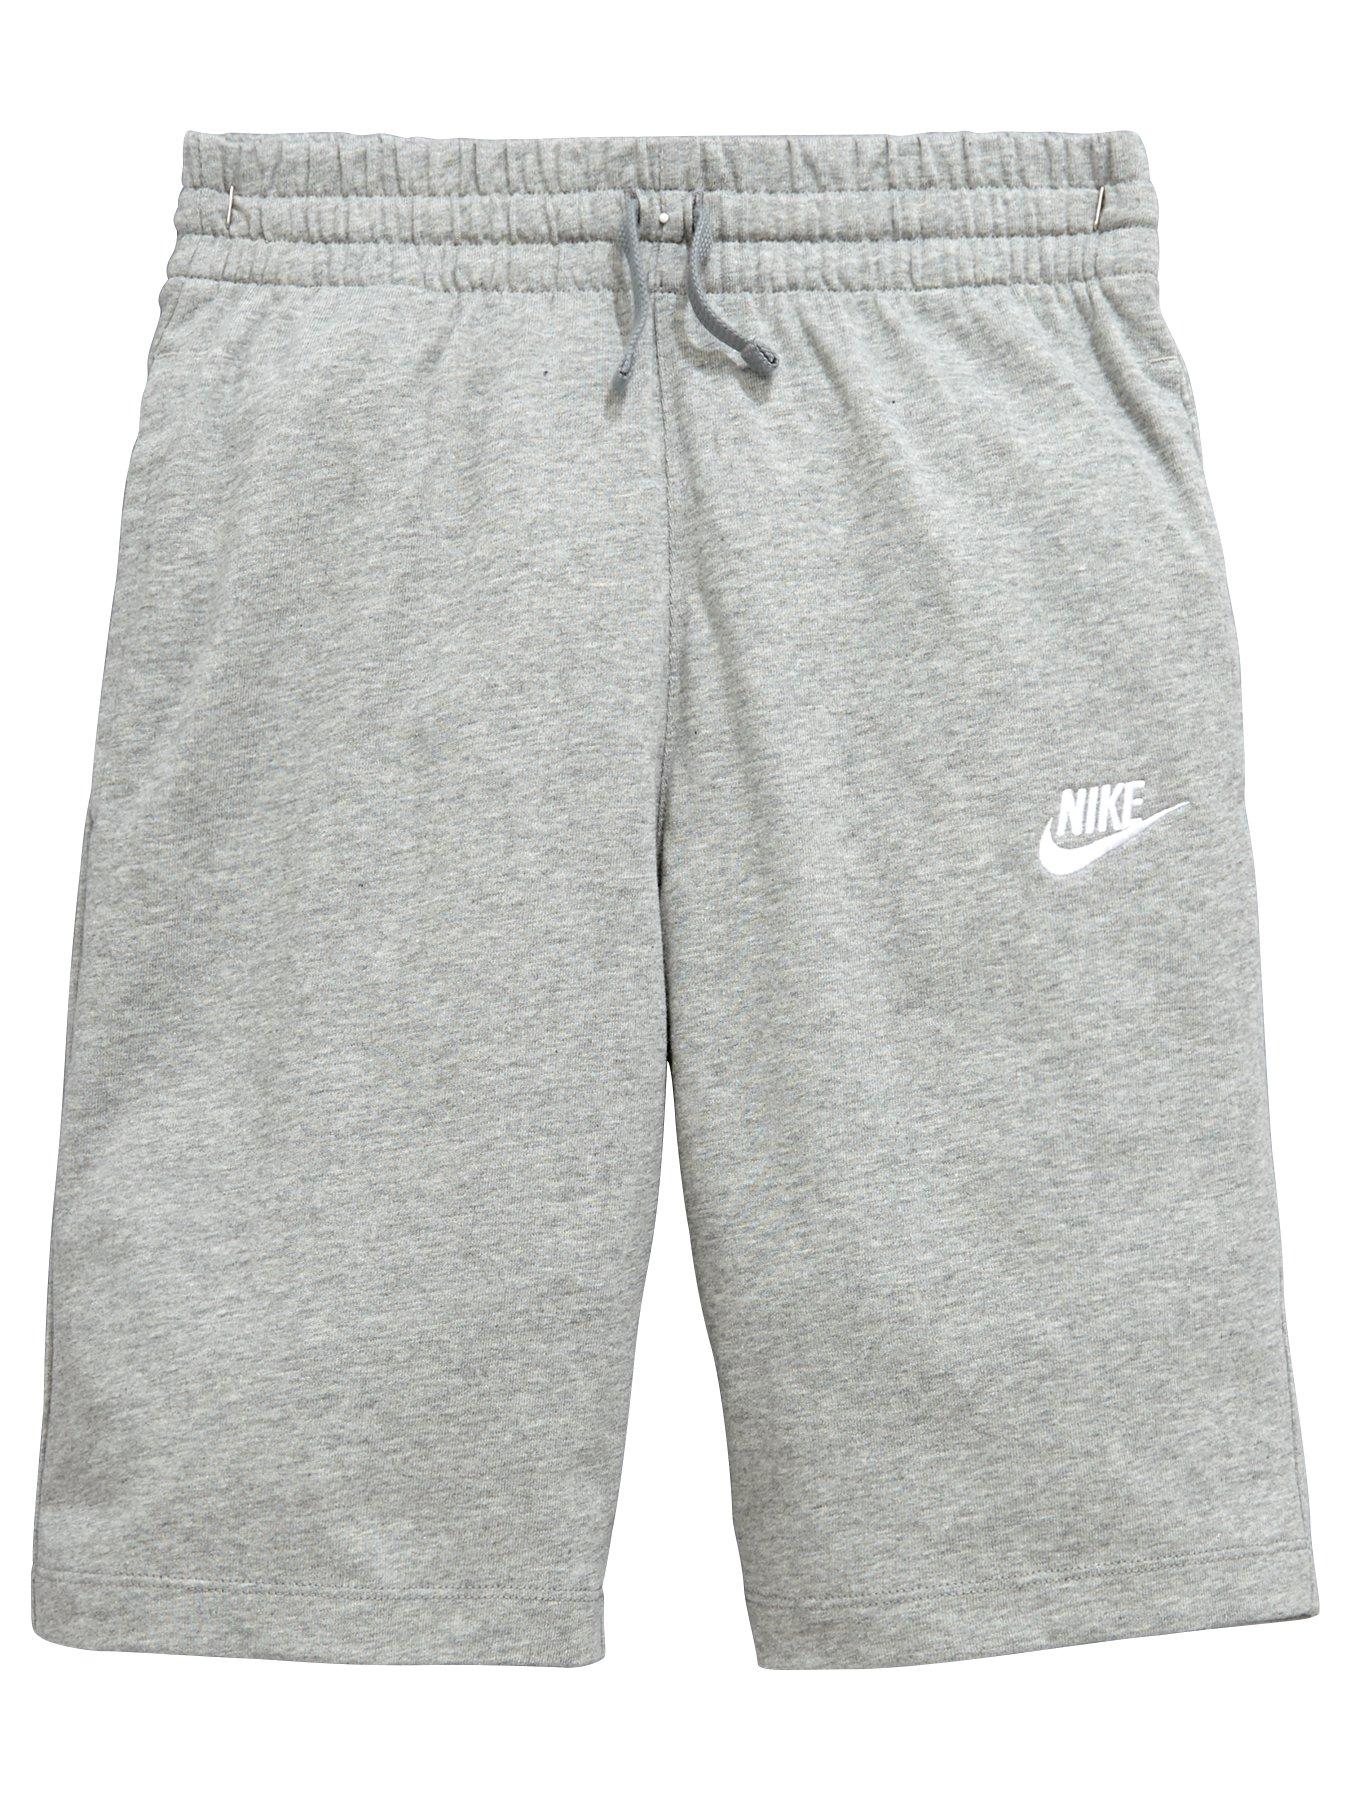 grey nike shorts